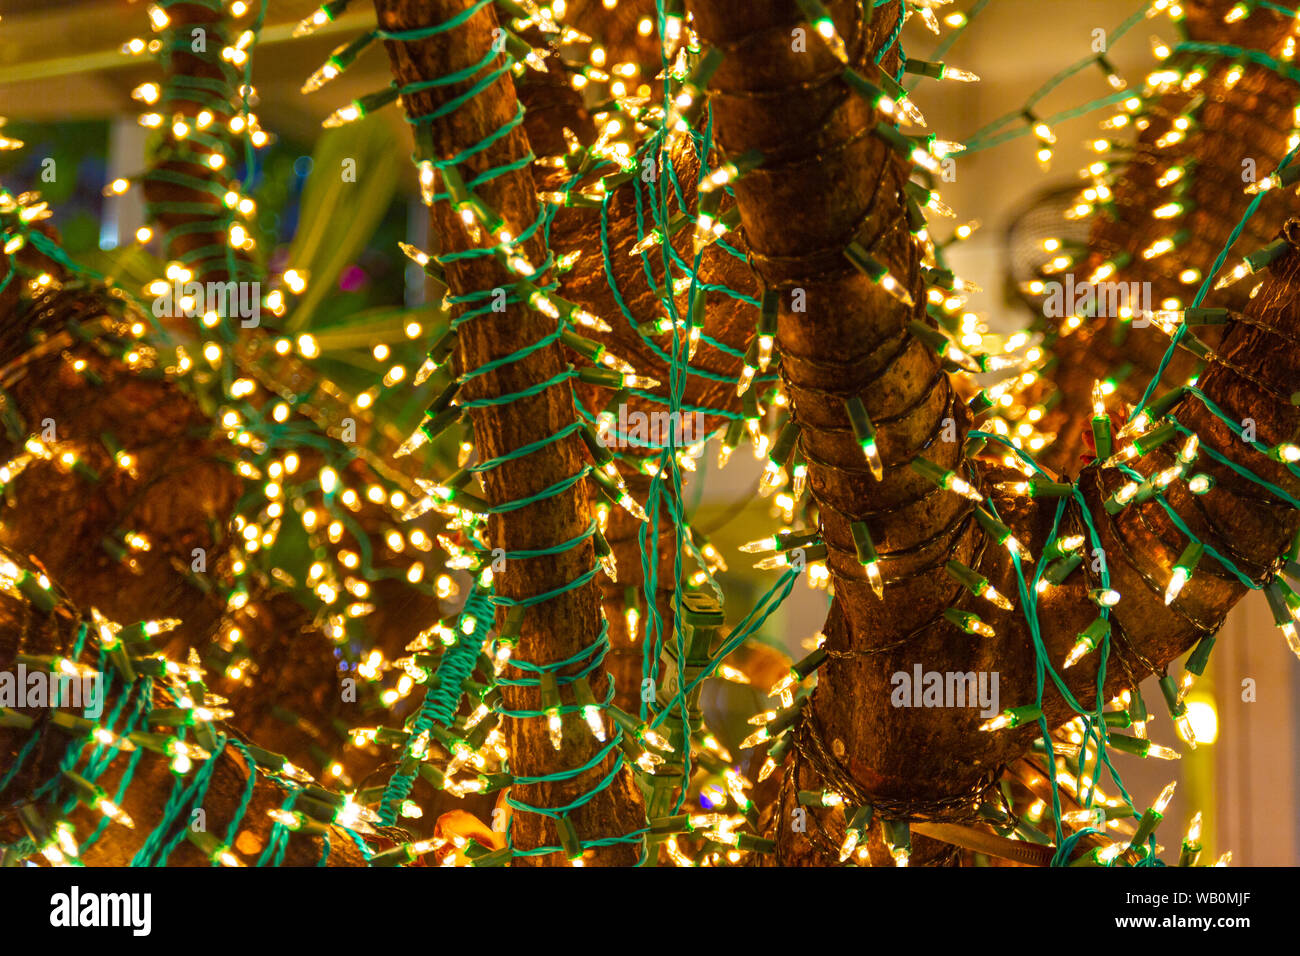 Dekorative Stringleuchten im Freien hängen am Baum im Garten in der Nacht -  dekorative weihnachtsbeleuchtung - frohes neues Jahr Stockfotografie - Alamy